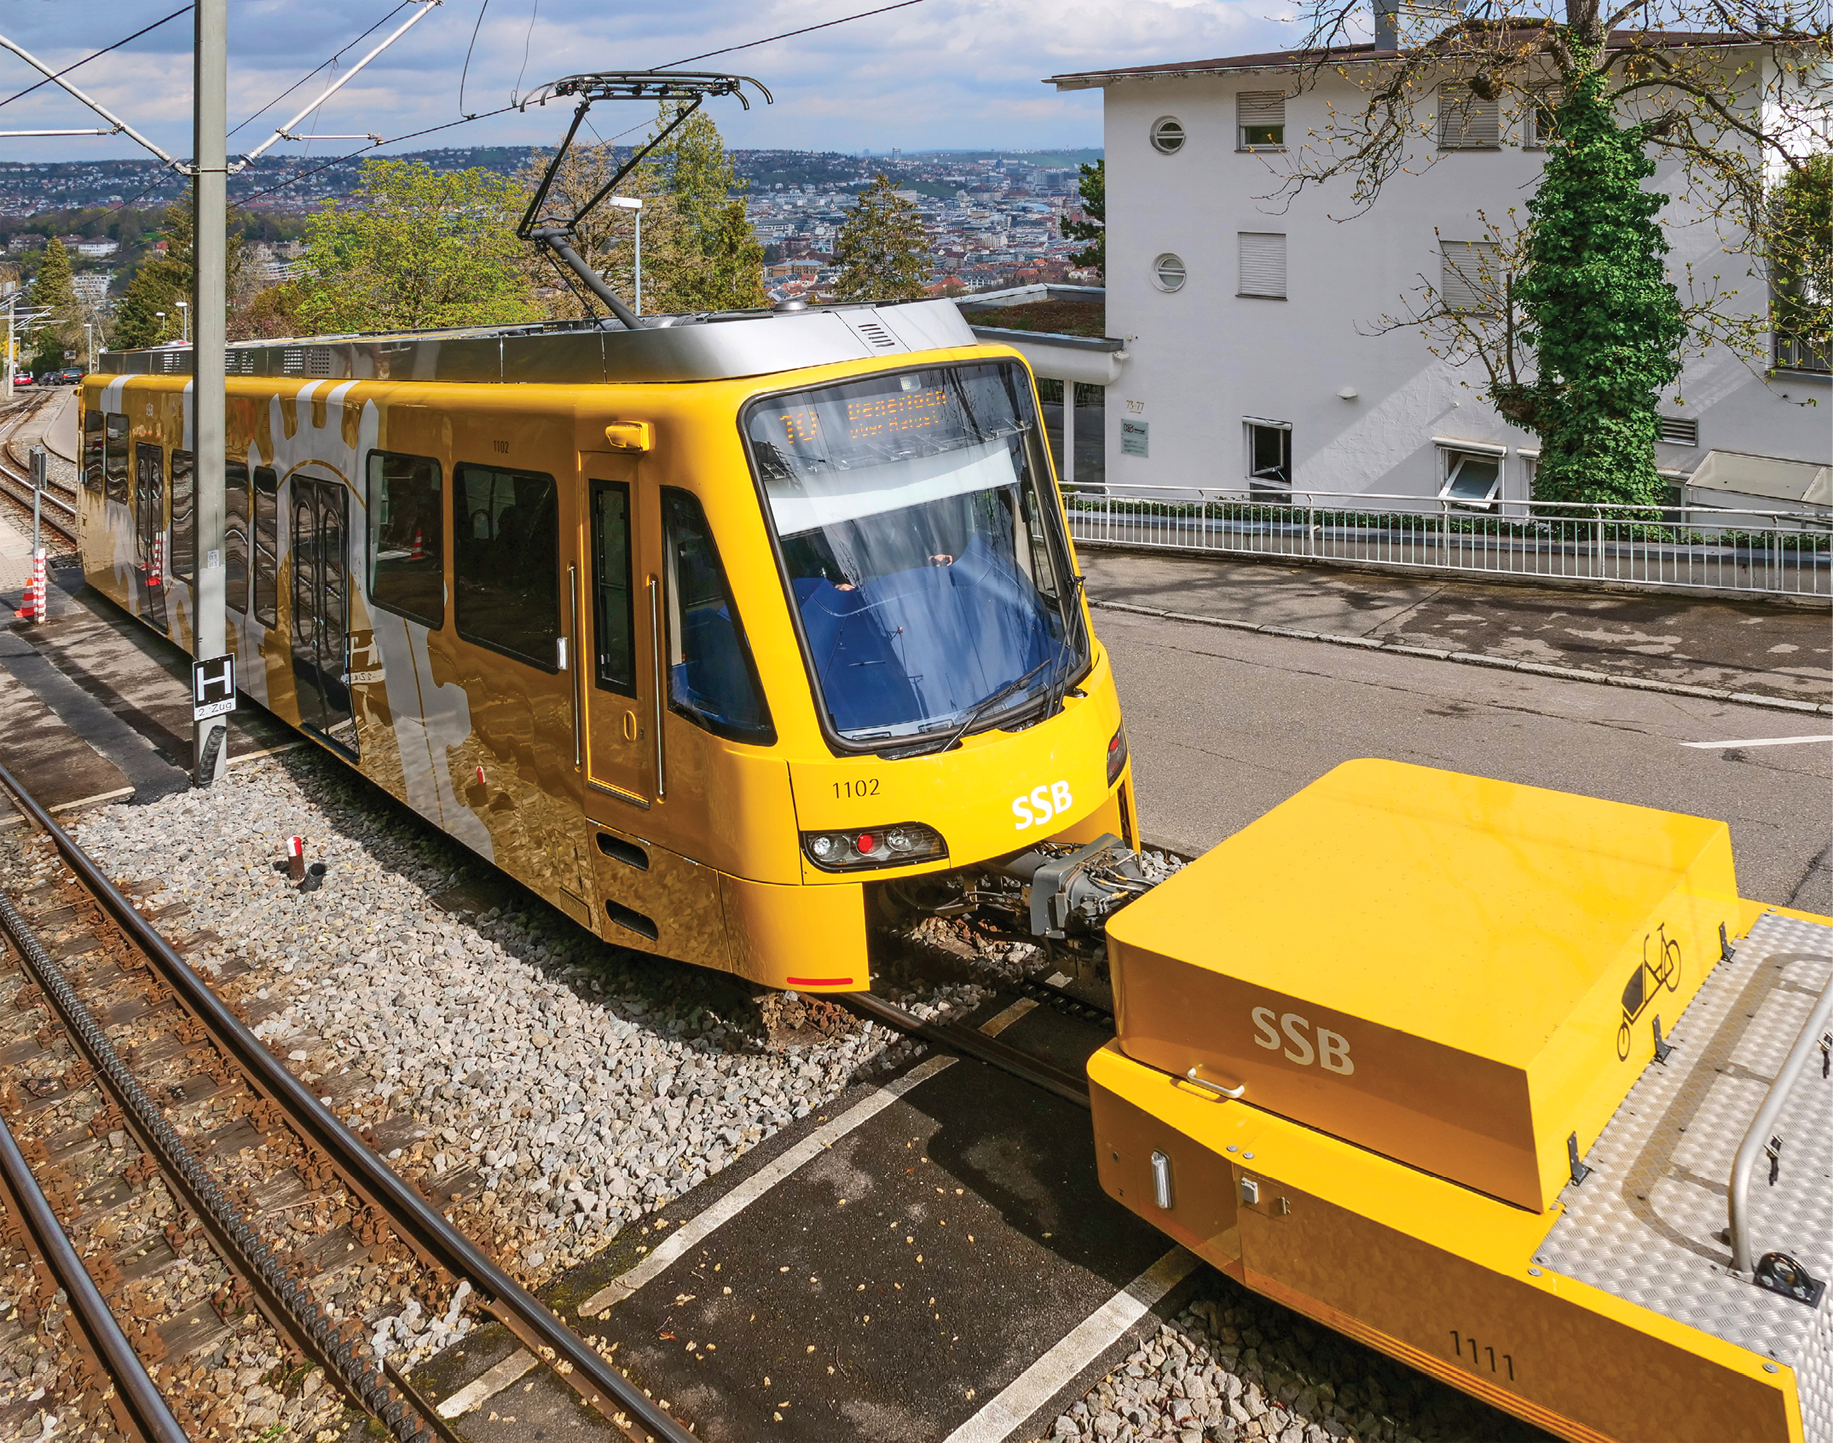 Triebwagen und Fahrradvorstellwagen der Stuttgarter Zahnradbahn